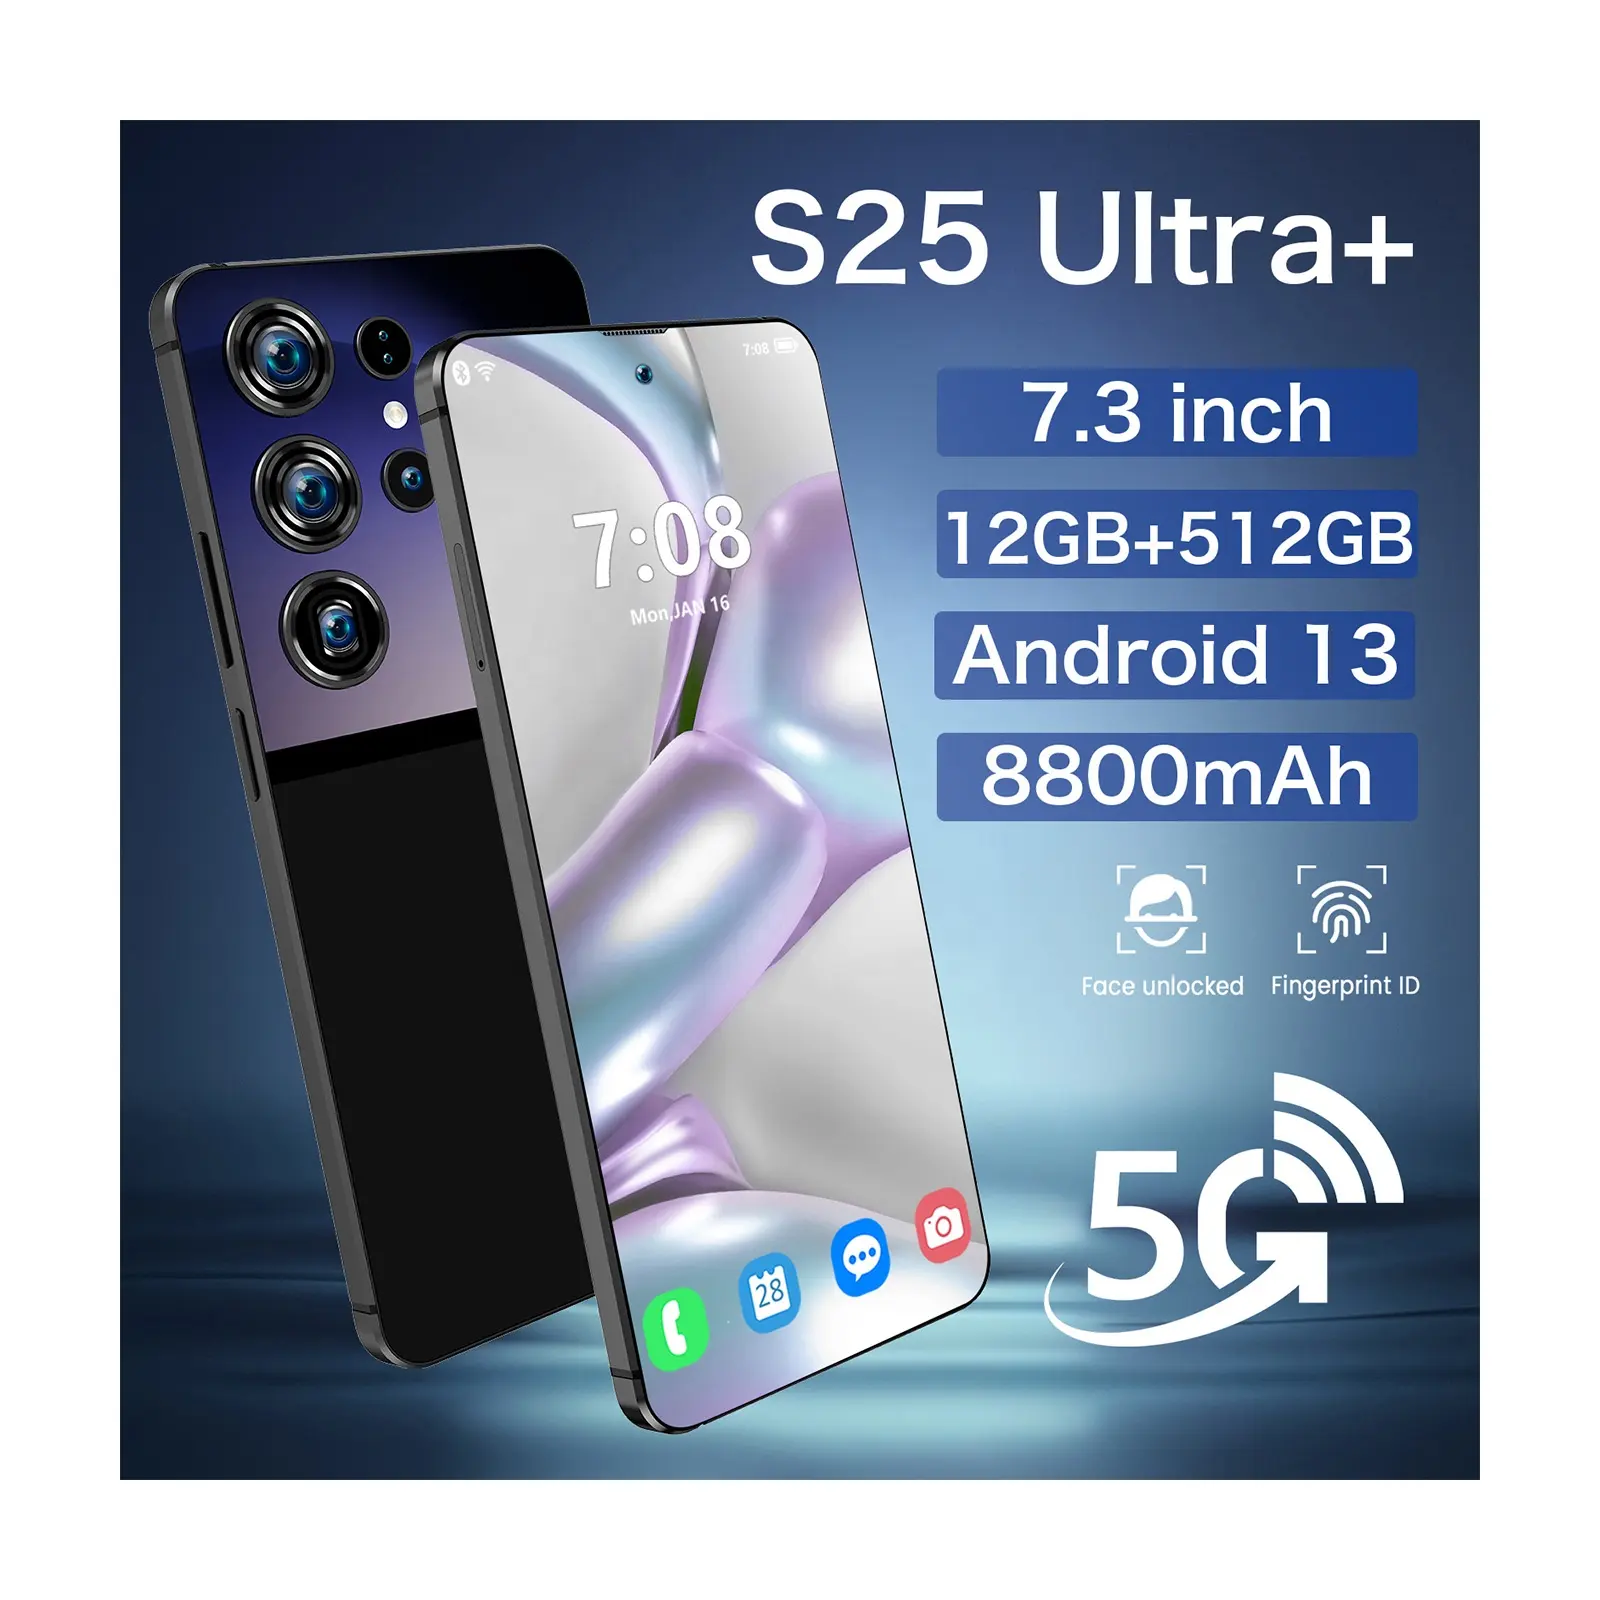 2024 stile caldo S25 Ultra + 48MP + 72MP telefoni cellulari cellulari android 7.3 pollici a buon mercato